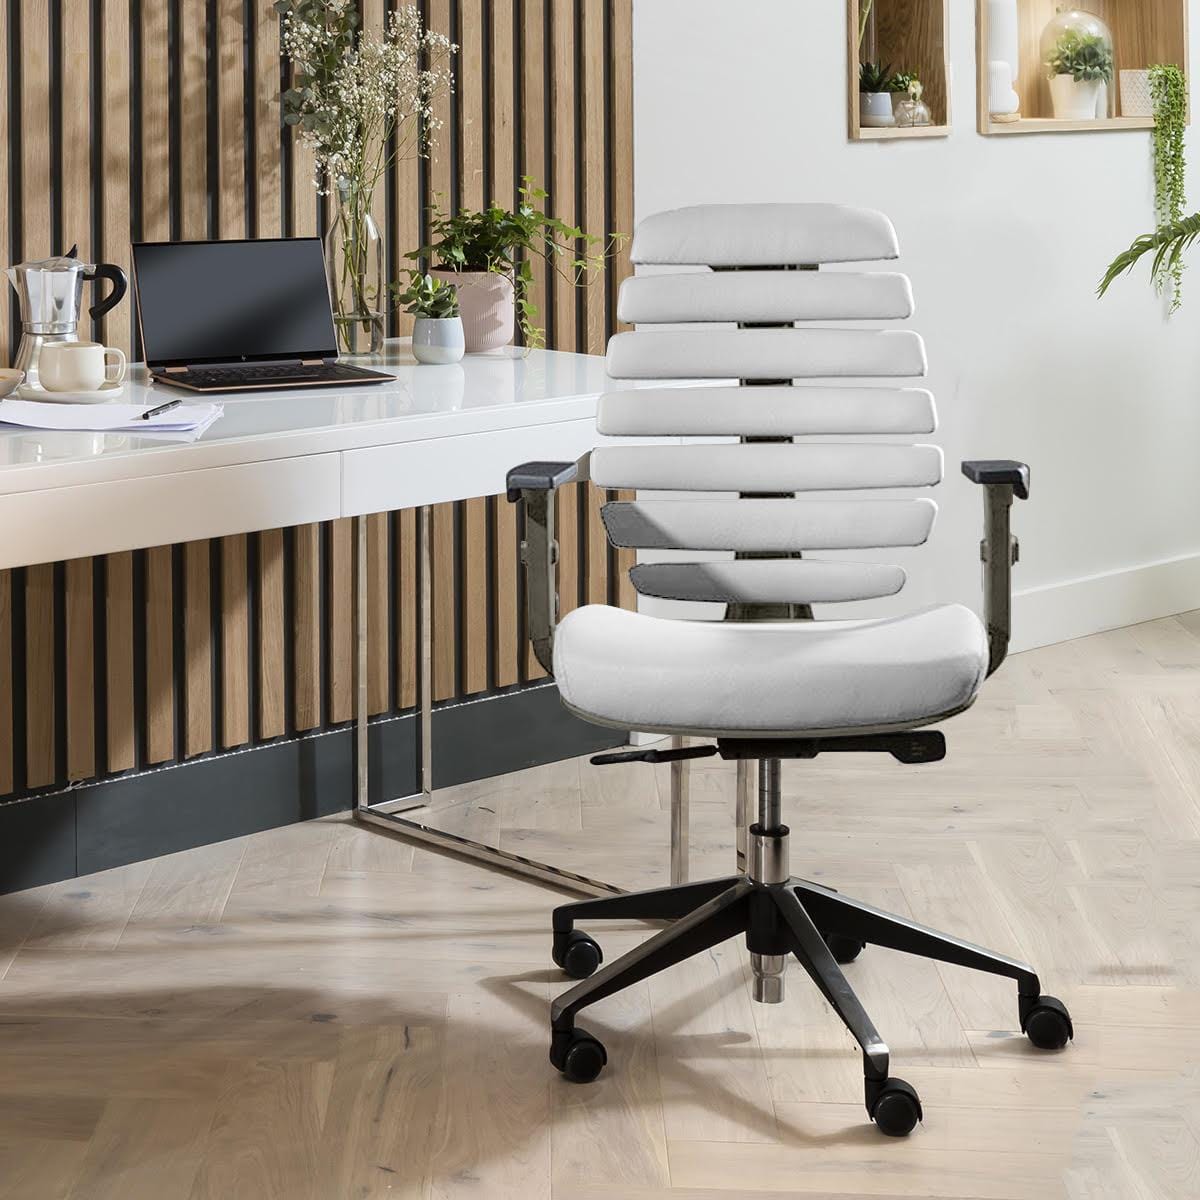 Quatropi Quatropi Ergonomic Morphorlogical White Leather Office Chair